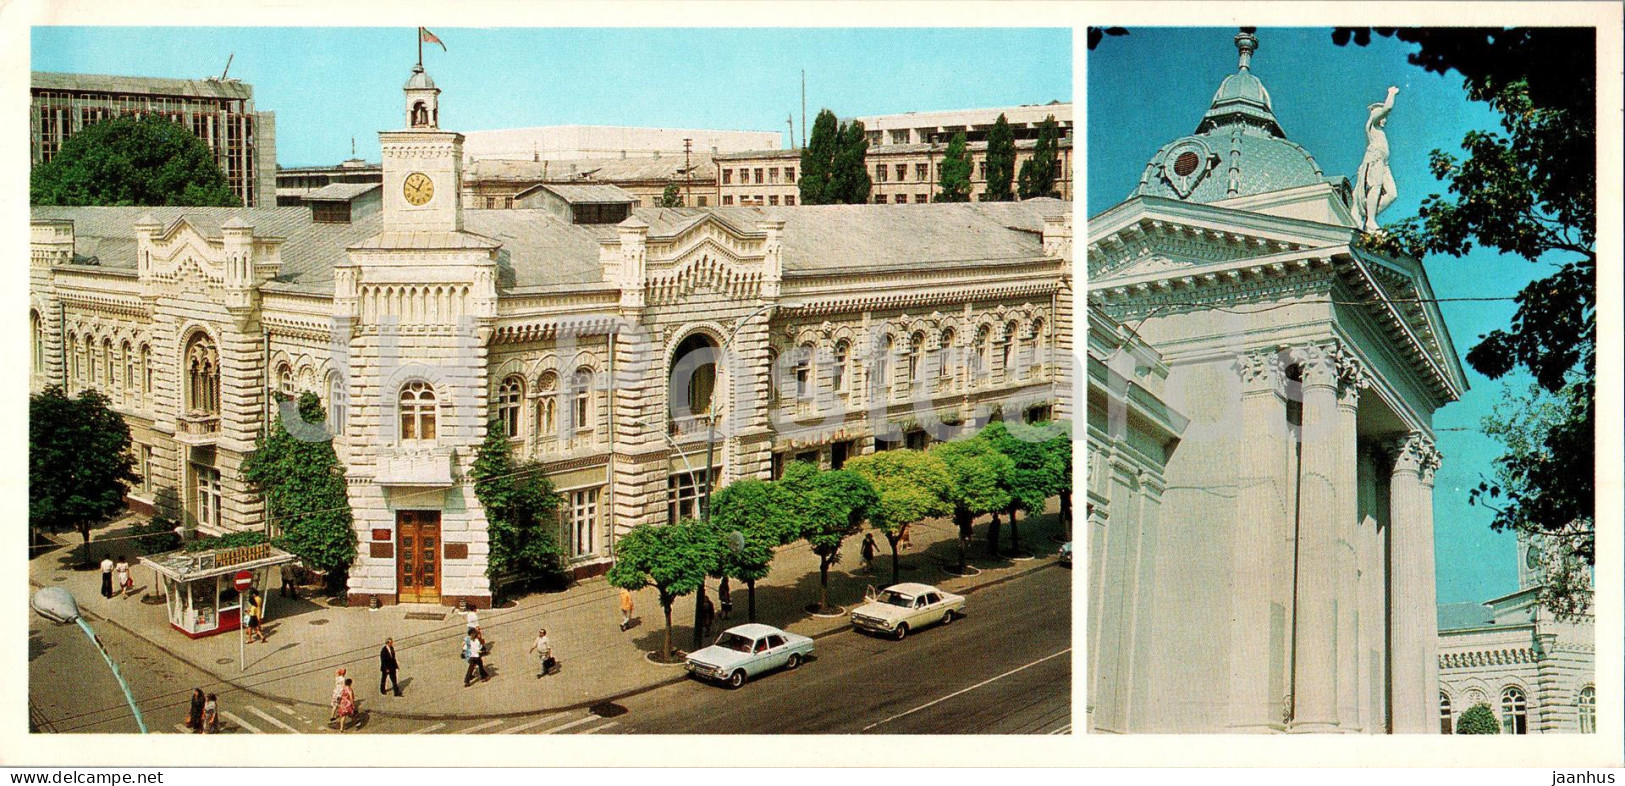 Chisinau - The Building Of City Executive Committee - The Organ Hall - 1980 - Moldova USSR - Unused - Moldova